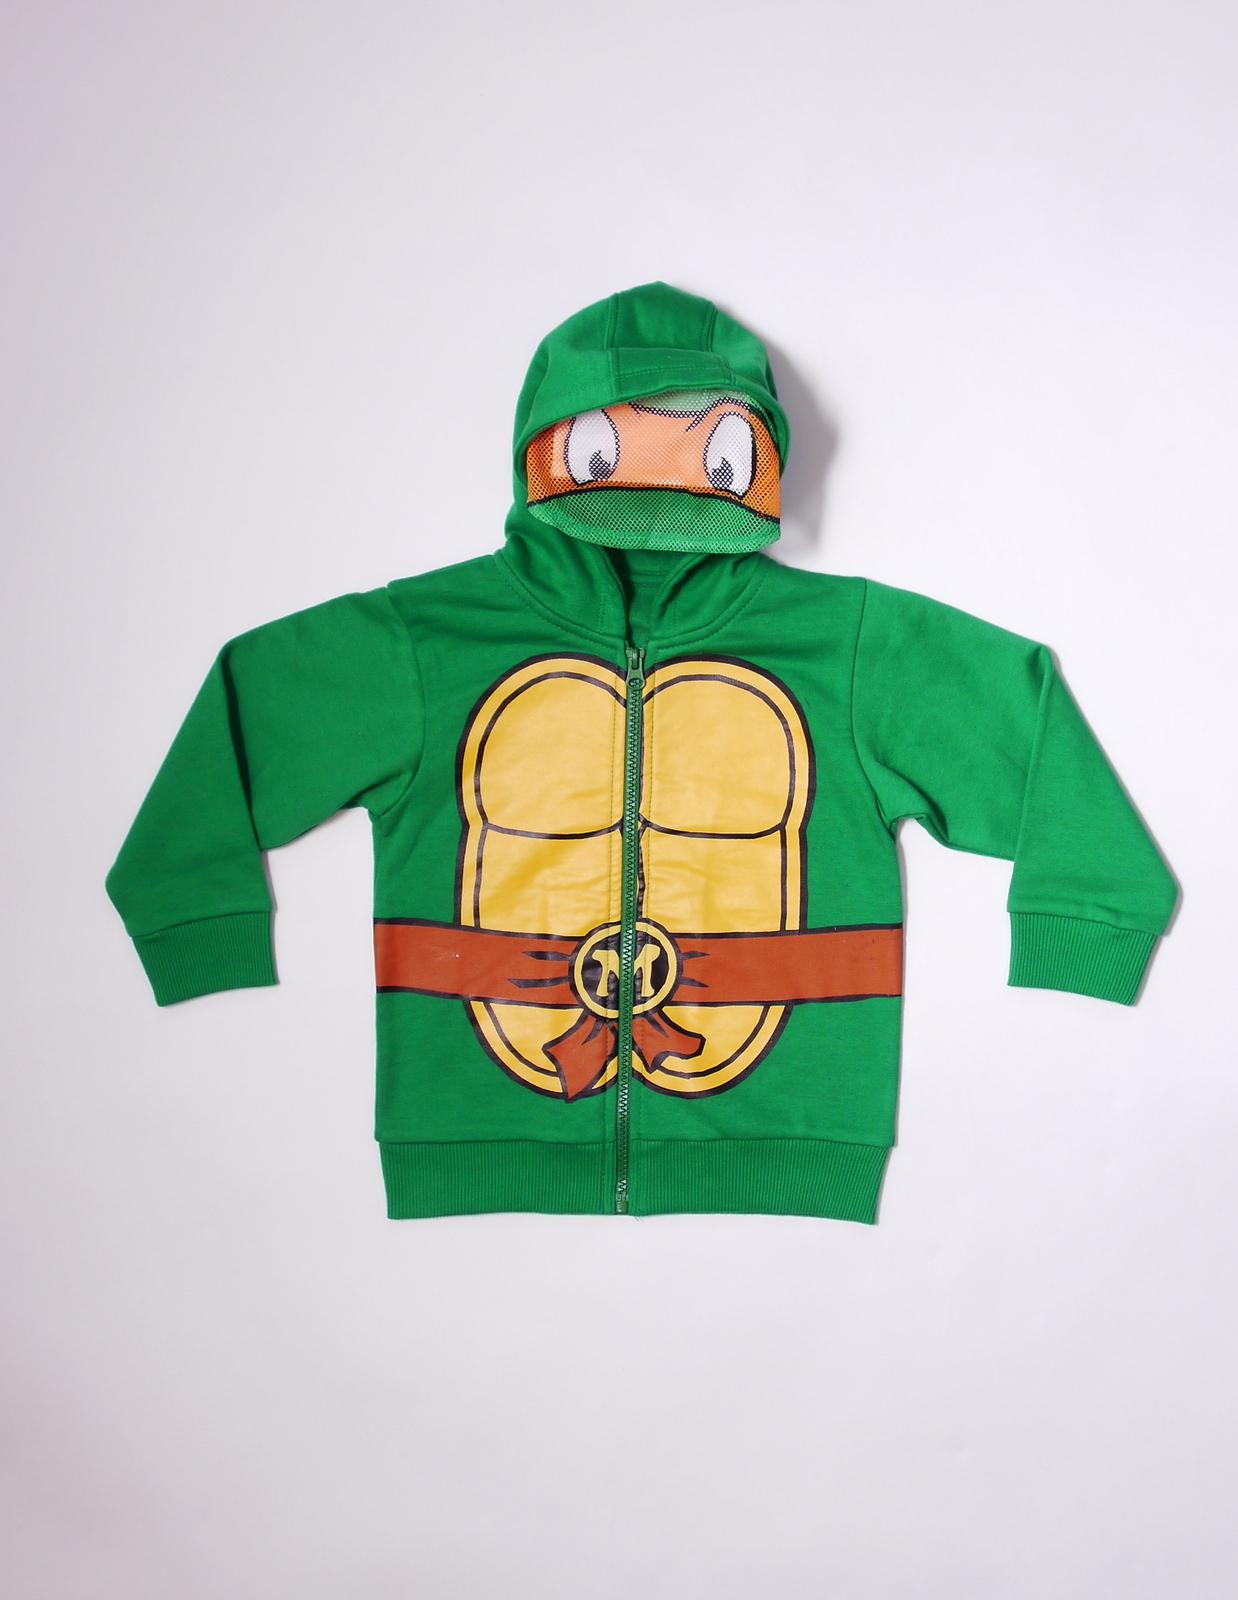 Nickelodeon Teenage Mutant Ninja Turtles Toddler Boy's Hoodie Jacket